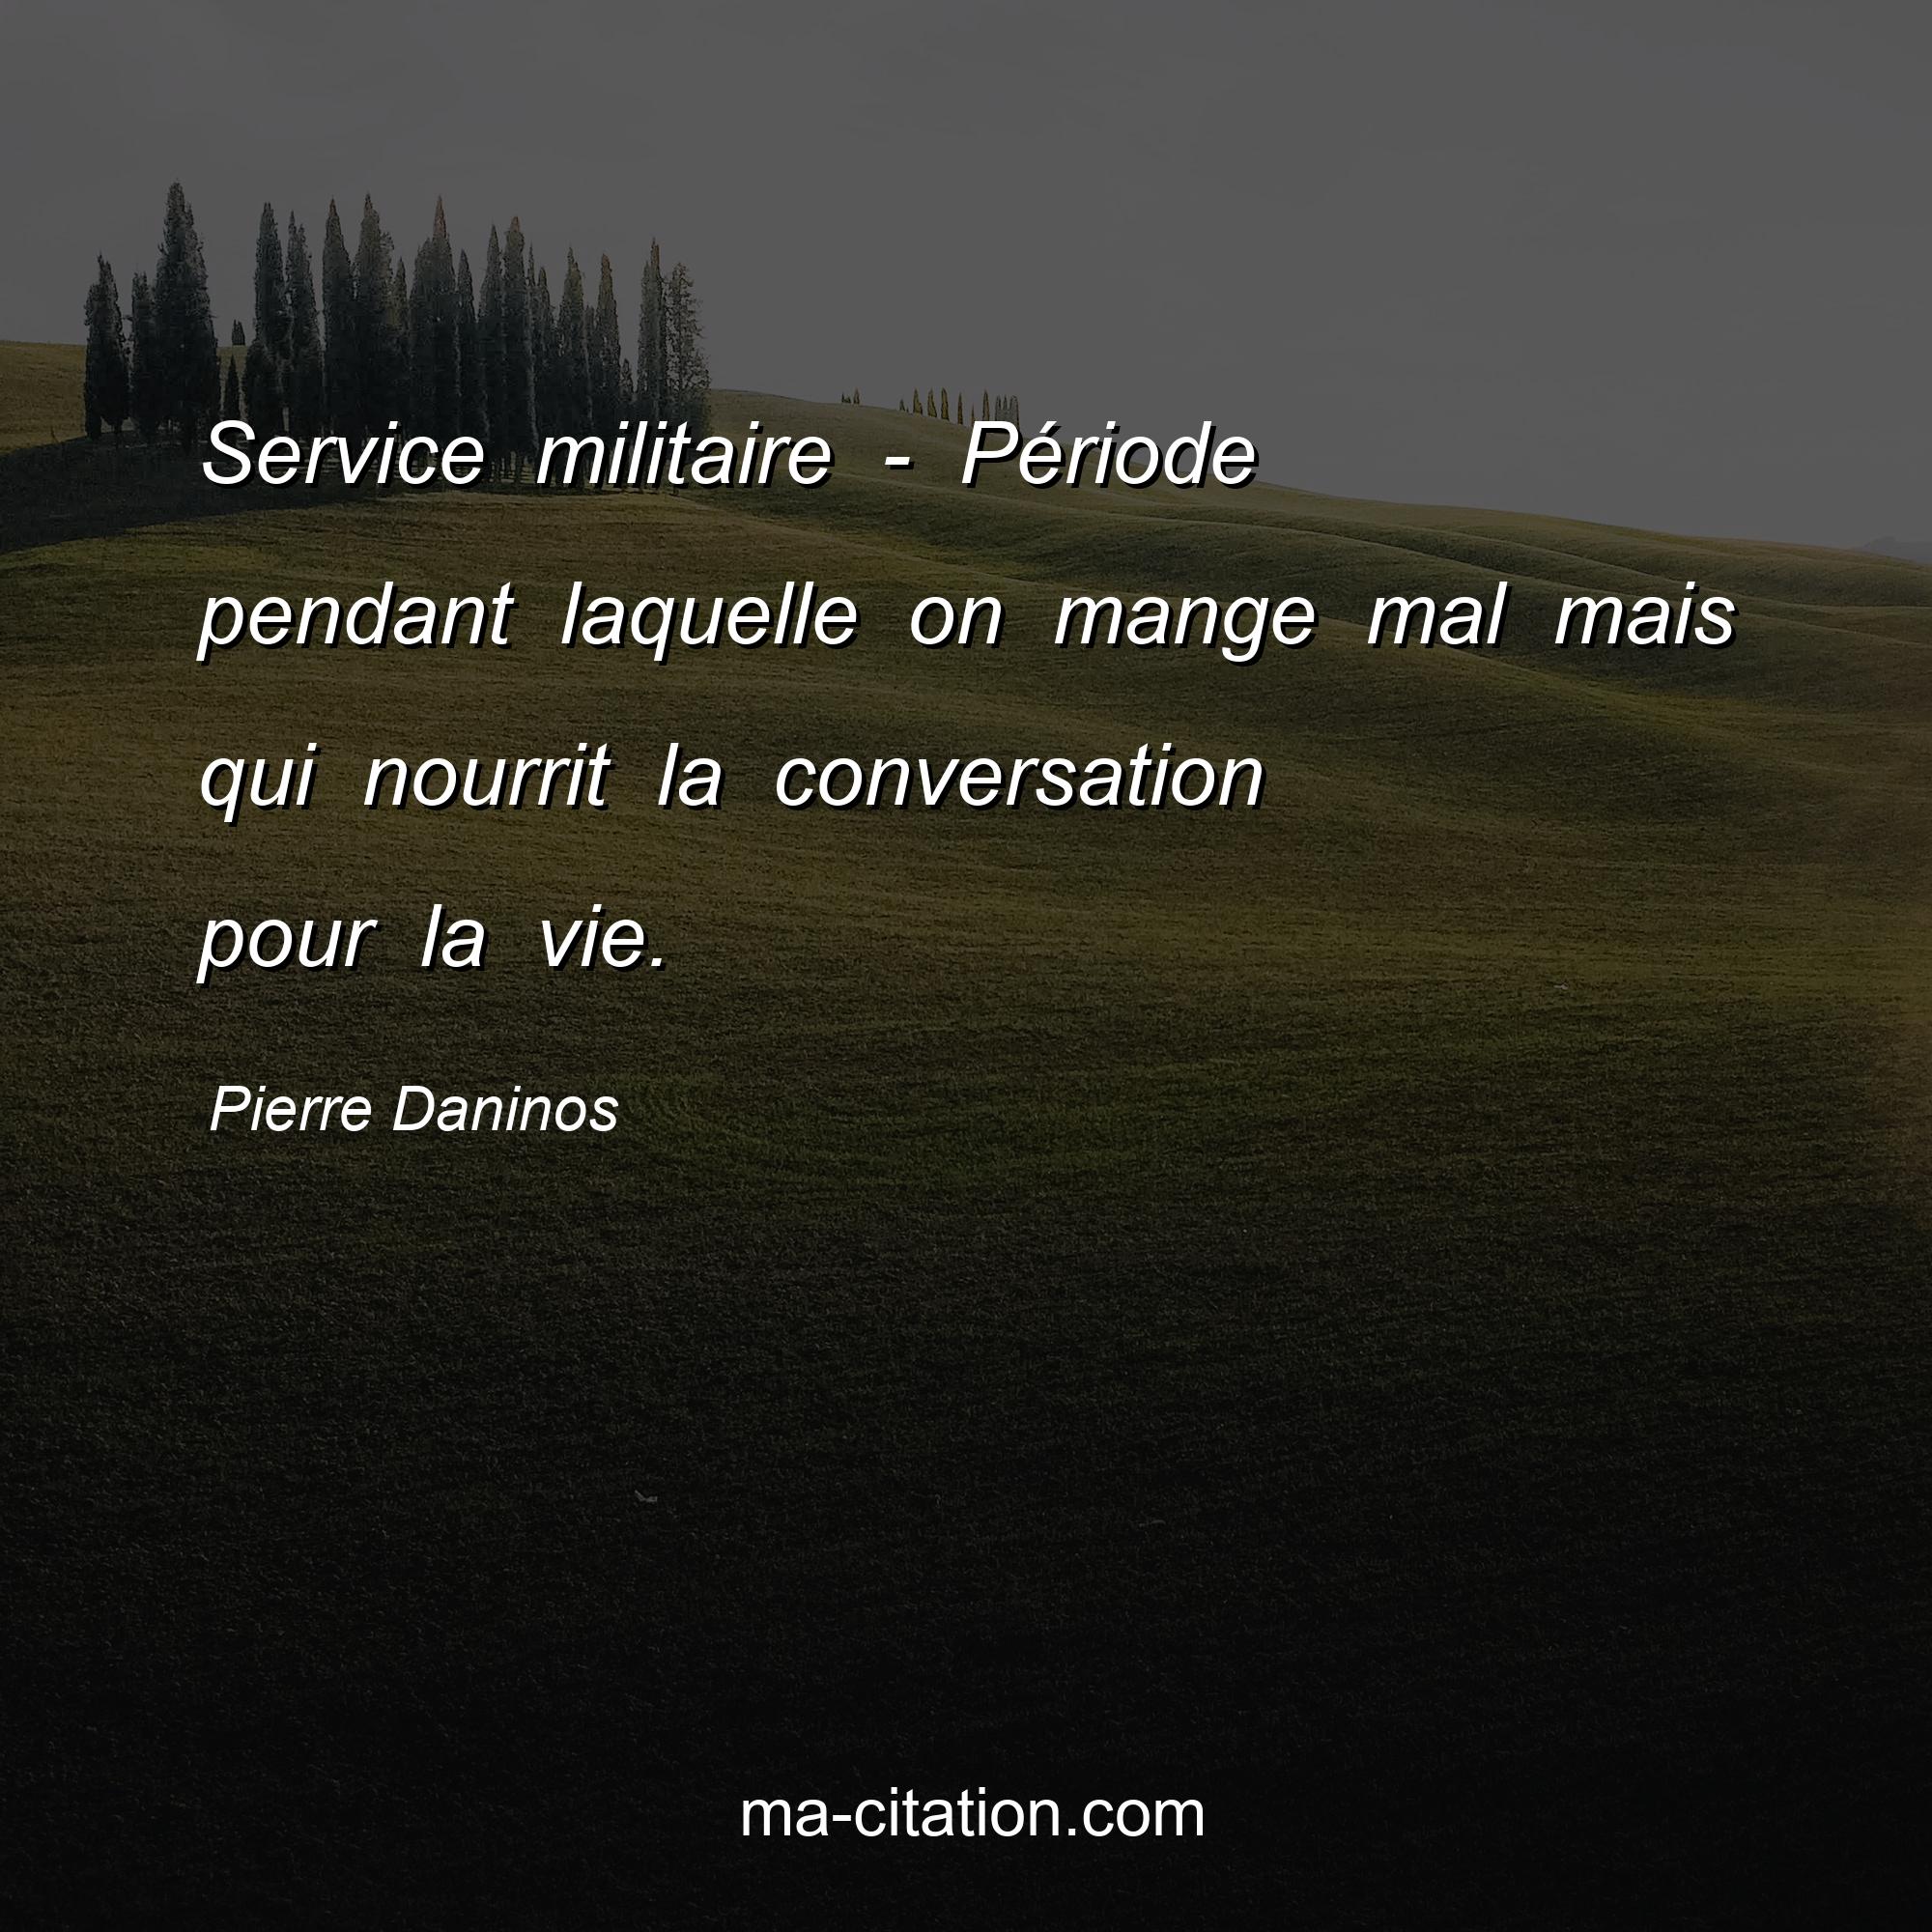 Pierre Daninos : Service militaire - Période pendant laquelle on mange mal mais qui nourrit la conversation pour la vie.